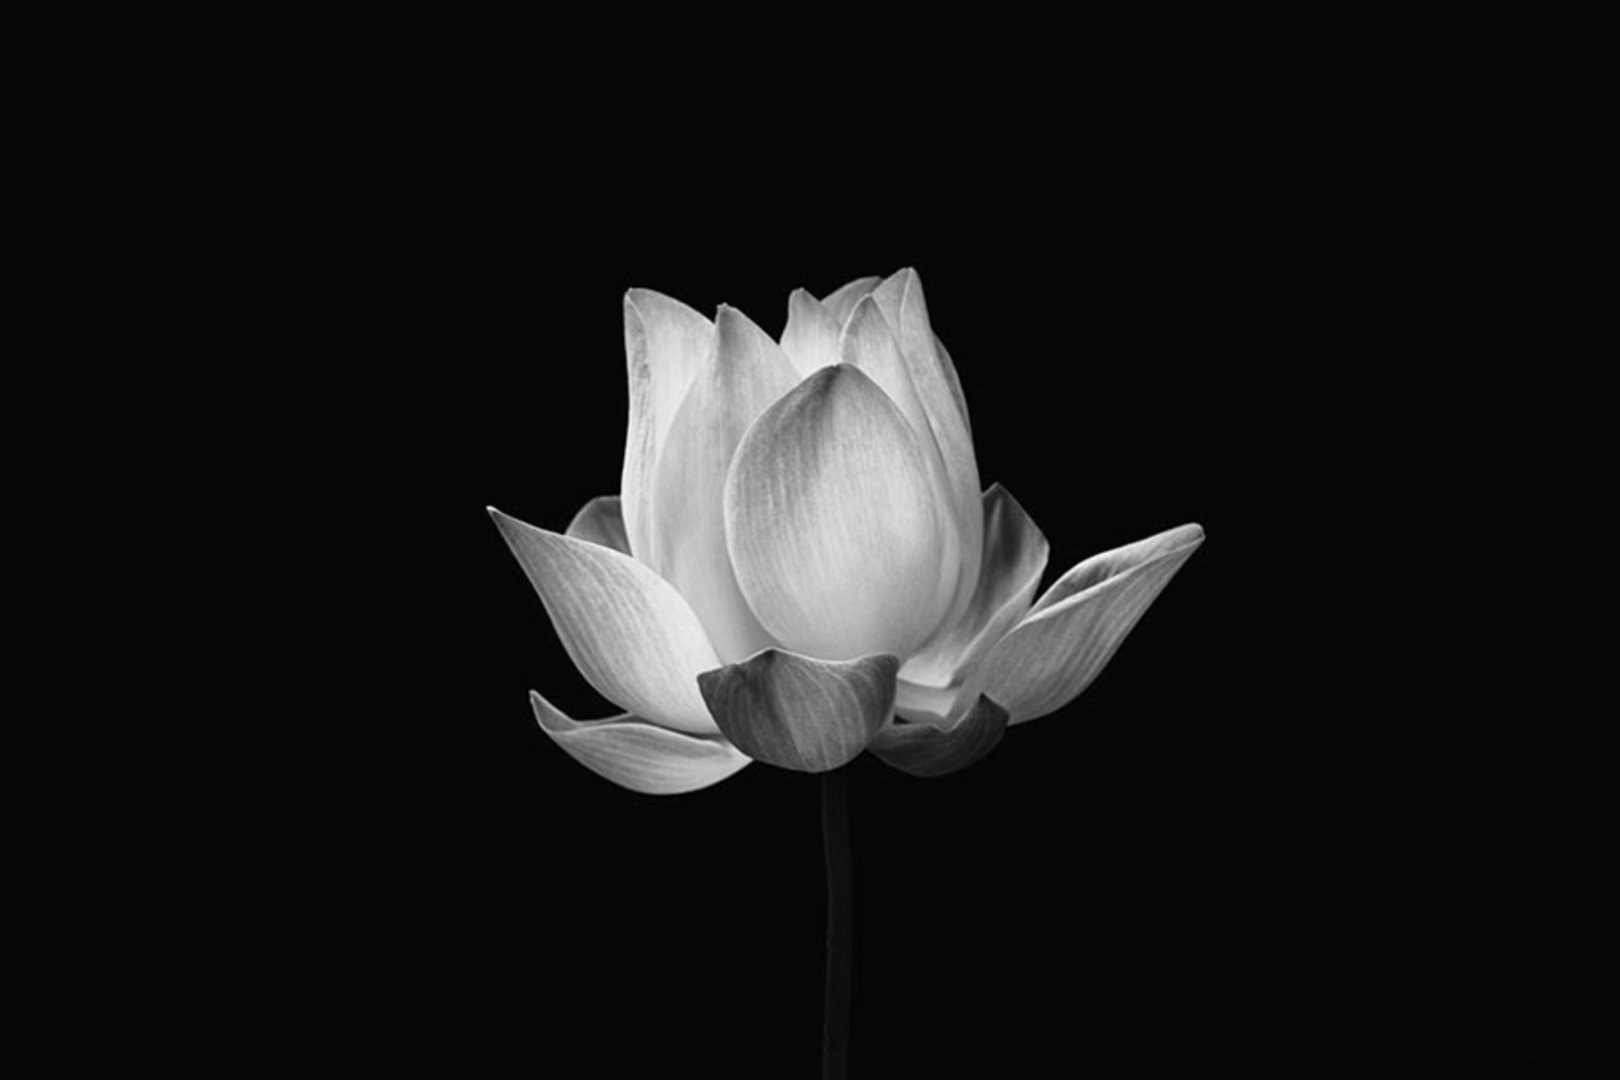 Hoa sen trắng là biểu tượng văn hóa của Việt Nam, được yêu thích bởi sự thanh cao, tinh khiết và mang ý nghĩa trang trọng. Với hình ảnh hoa sen trắng tuyệt đẹp trong ảnh, bạn có thể thấy rõ vẻ đẹp cổ kính của loài hoa này và cảm nhận tinh thần trong sáng mà nó đại diện. Hãy cùng chiêm ngưỡng những bức ảnh hoa sen trắng độc đáo trong chương trình.